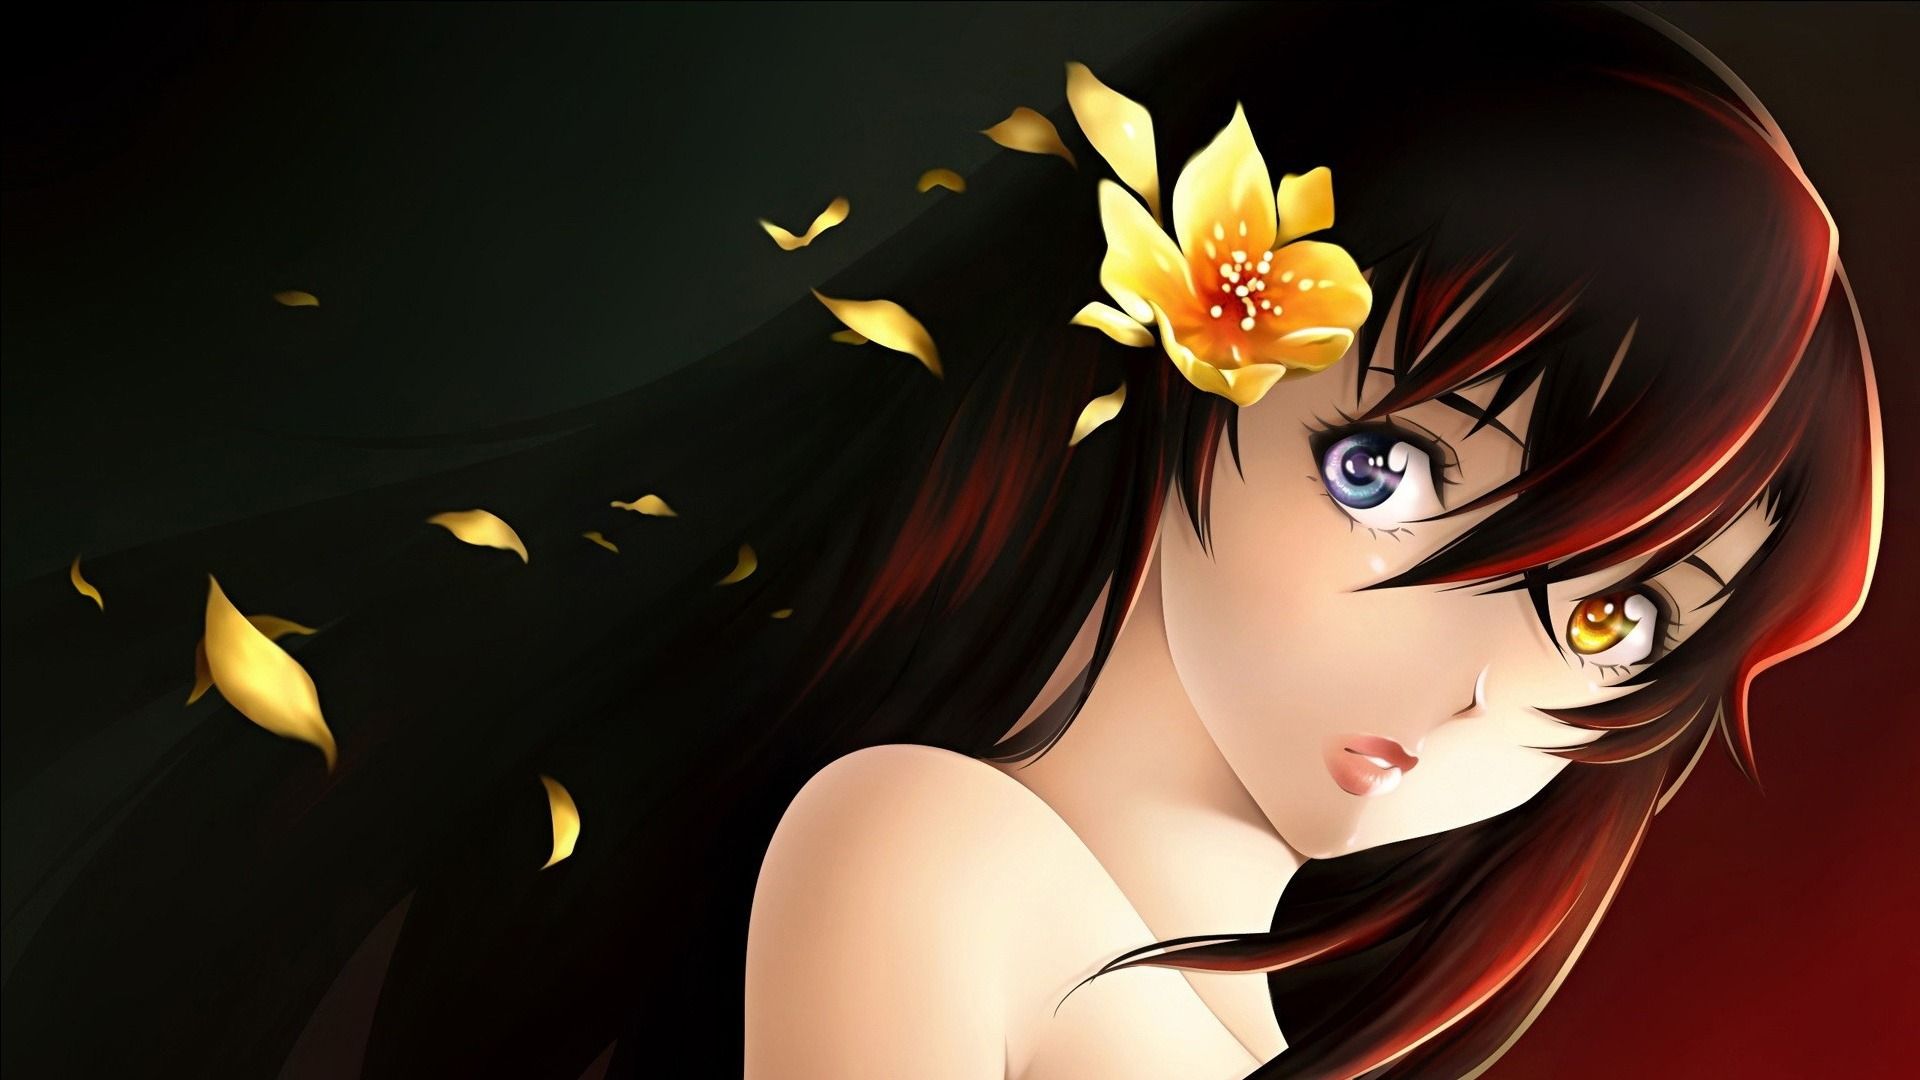 Sweet Beauty desktop wallpaper featuring an anime character from Rozen Maiden.